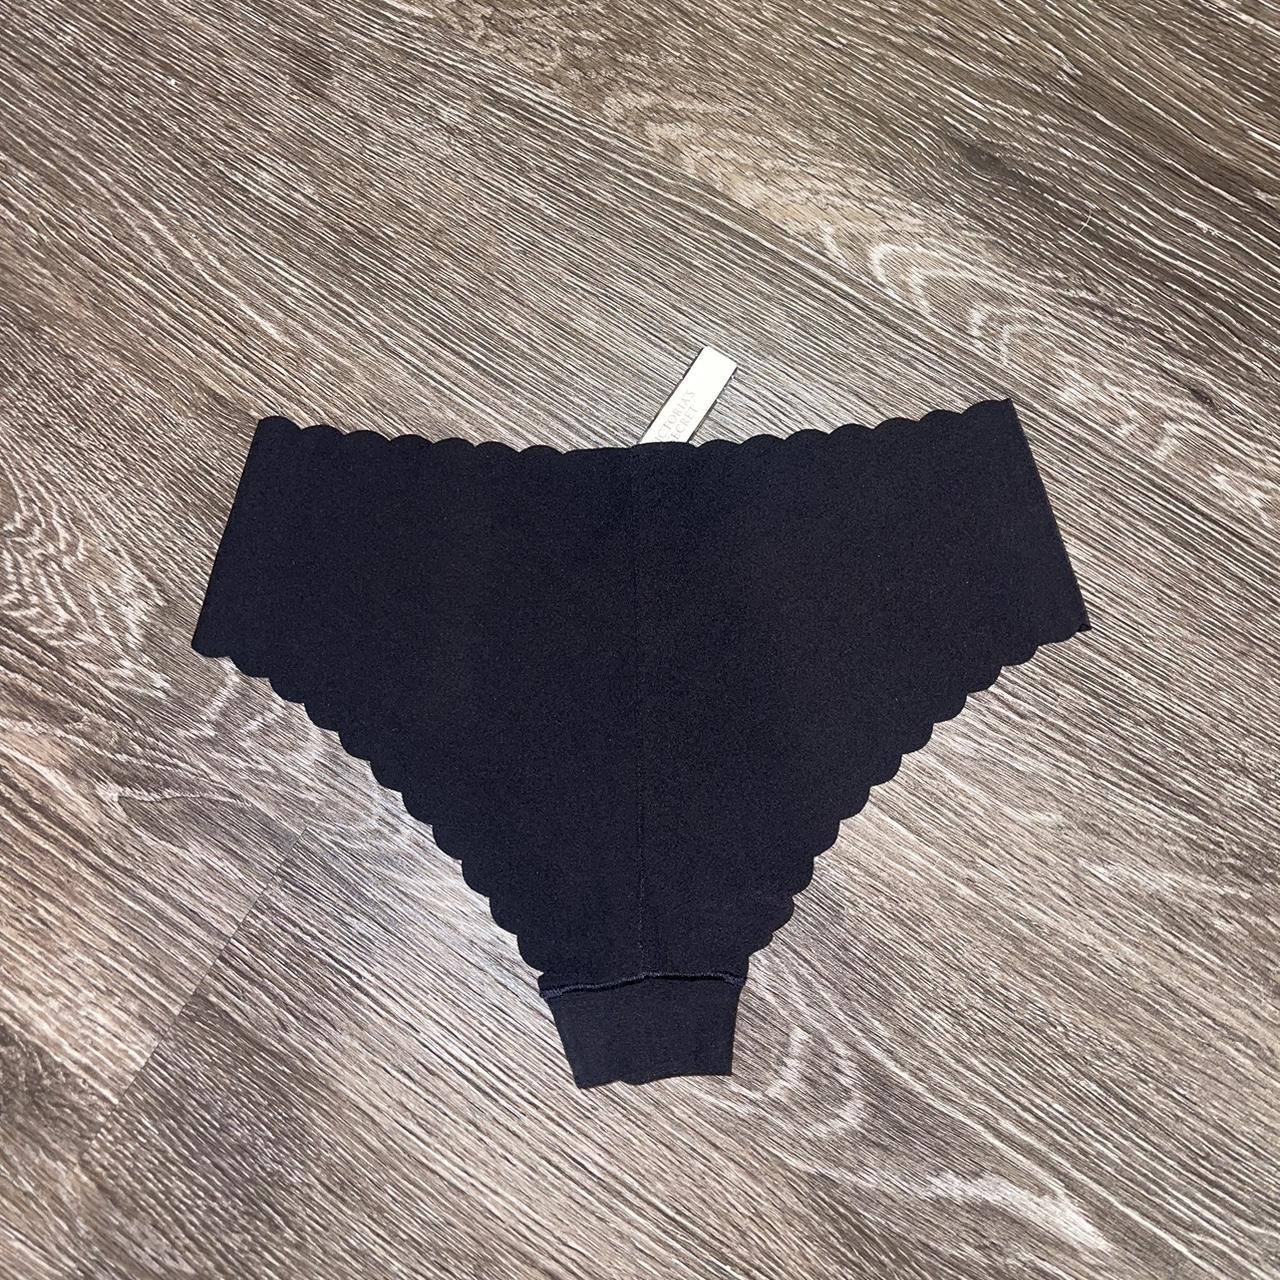 Victoria's Secret black cheeky underwear NEVER WORN - Depop